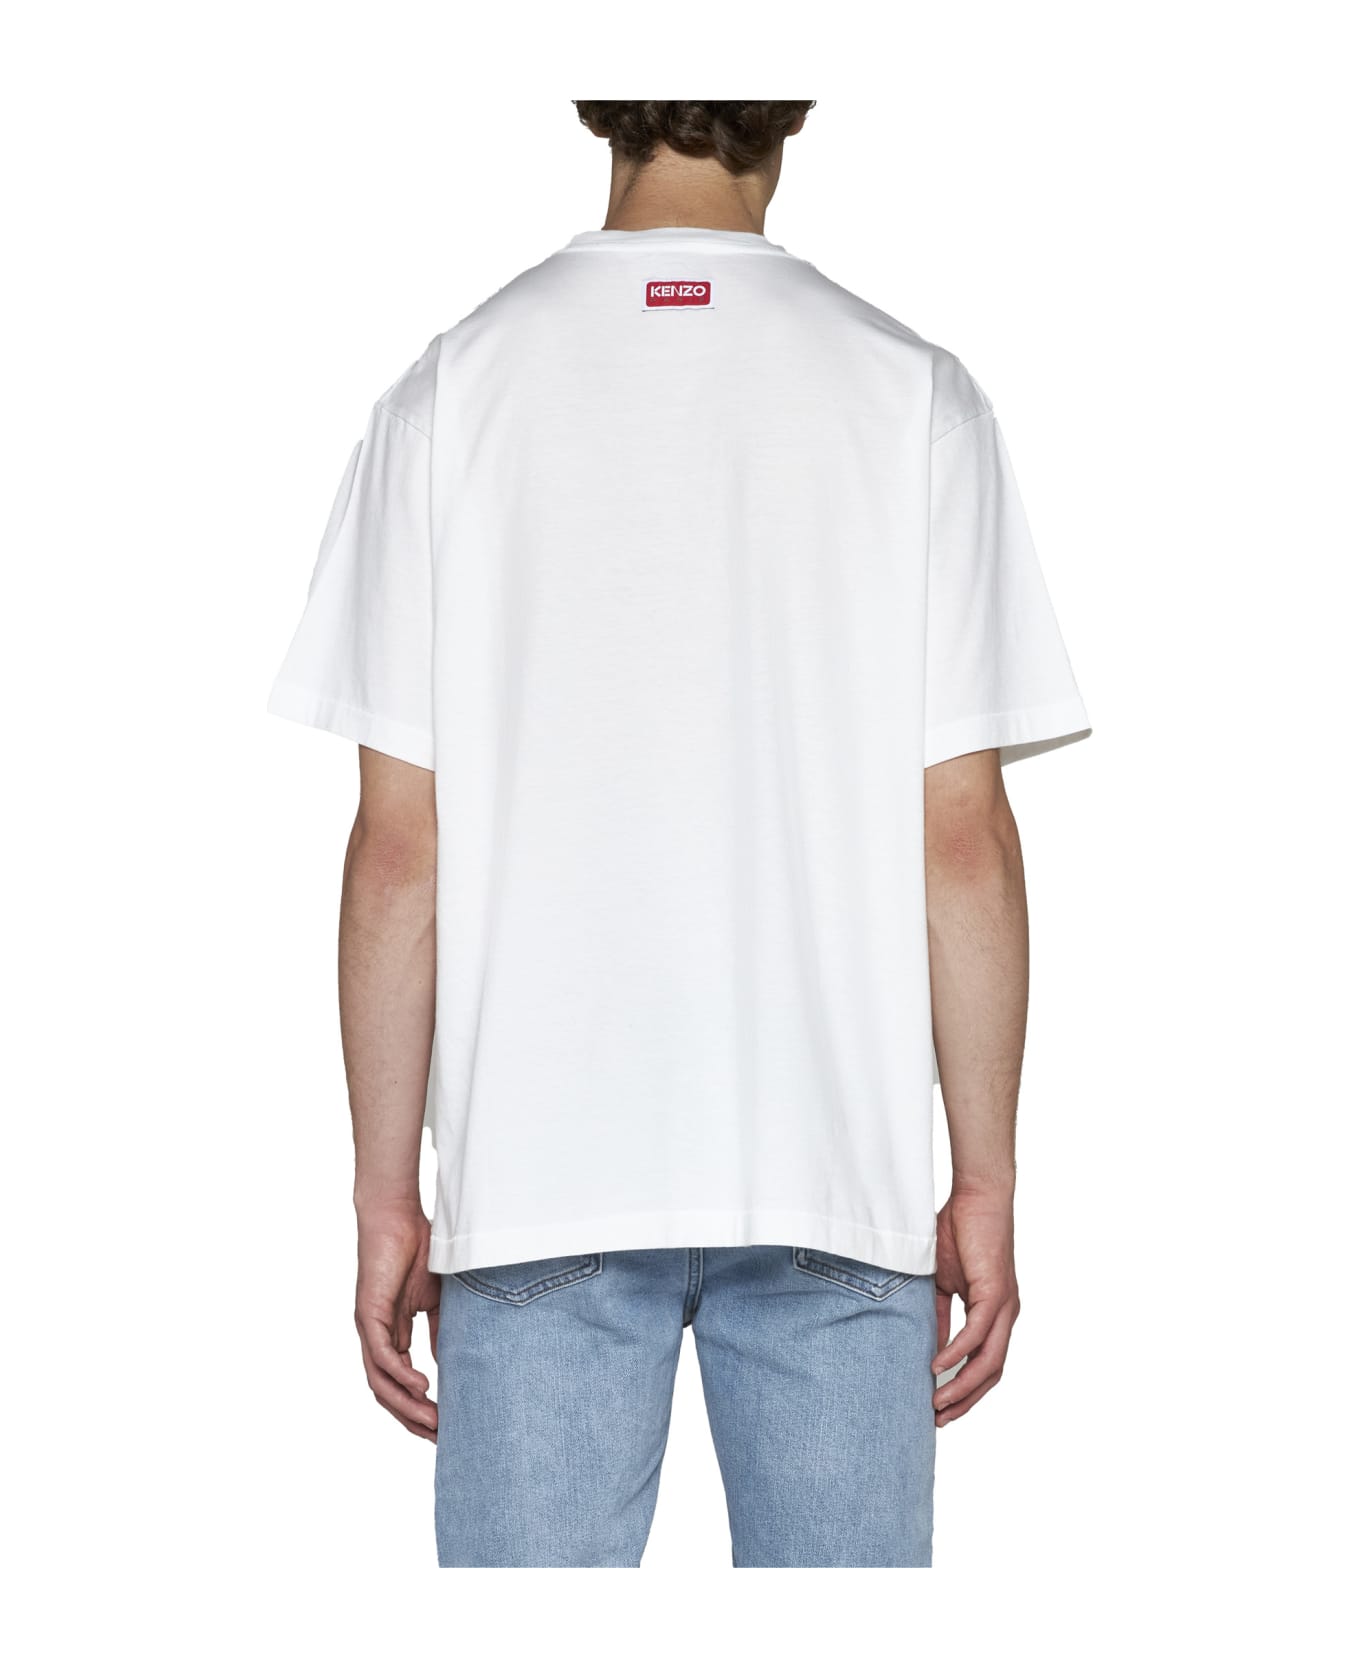 Kenzo Tiger Varsity T-shirt - White